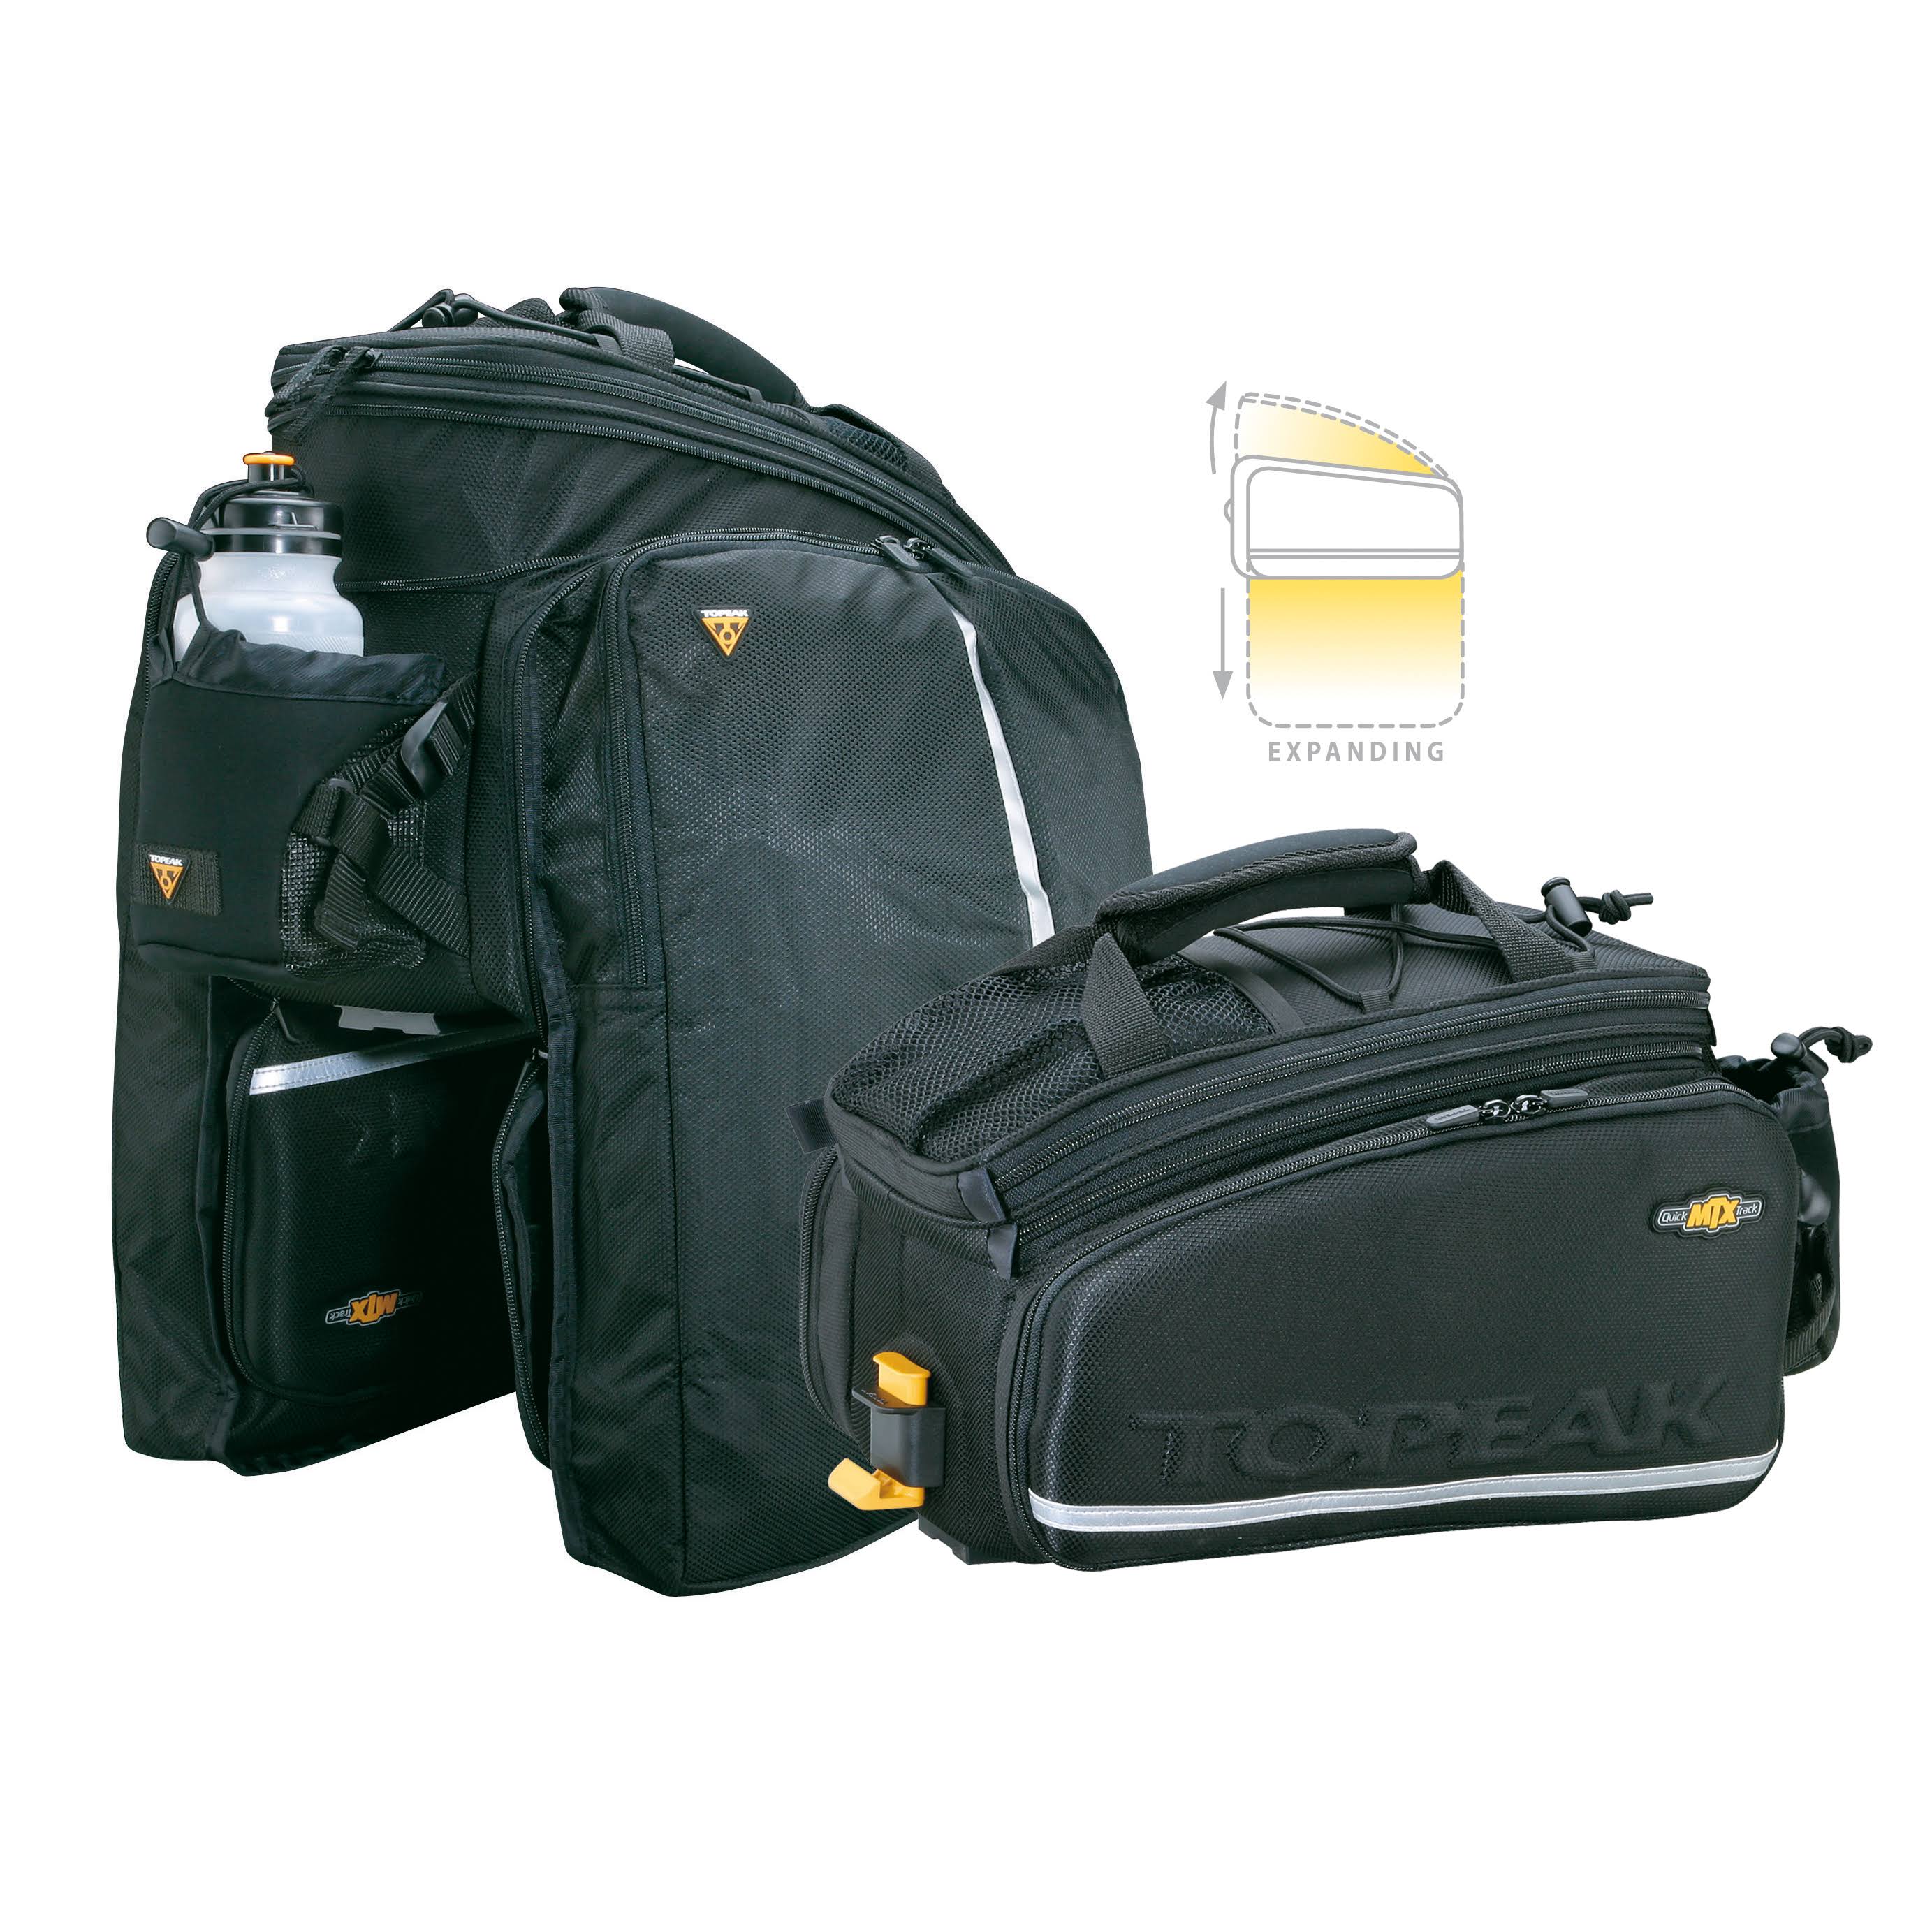 Topeak MTX Trunkbag DXP Rack Bag with Expandable Panniers - 22.6 Liter, Black